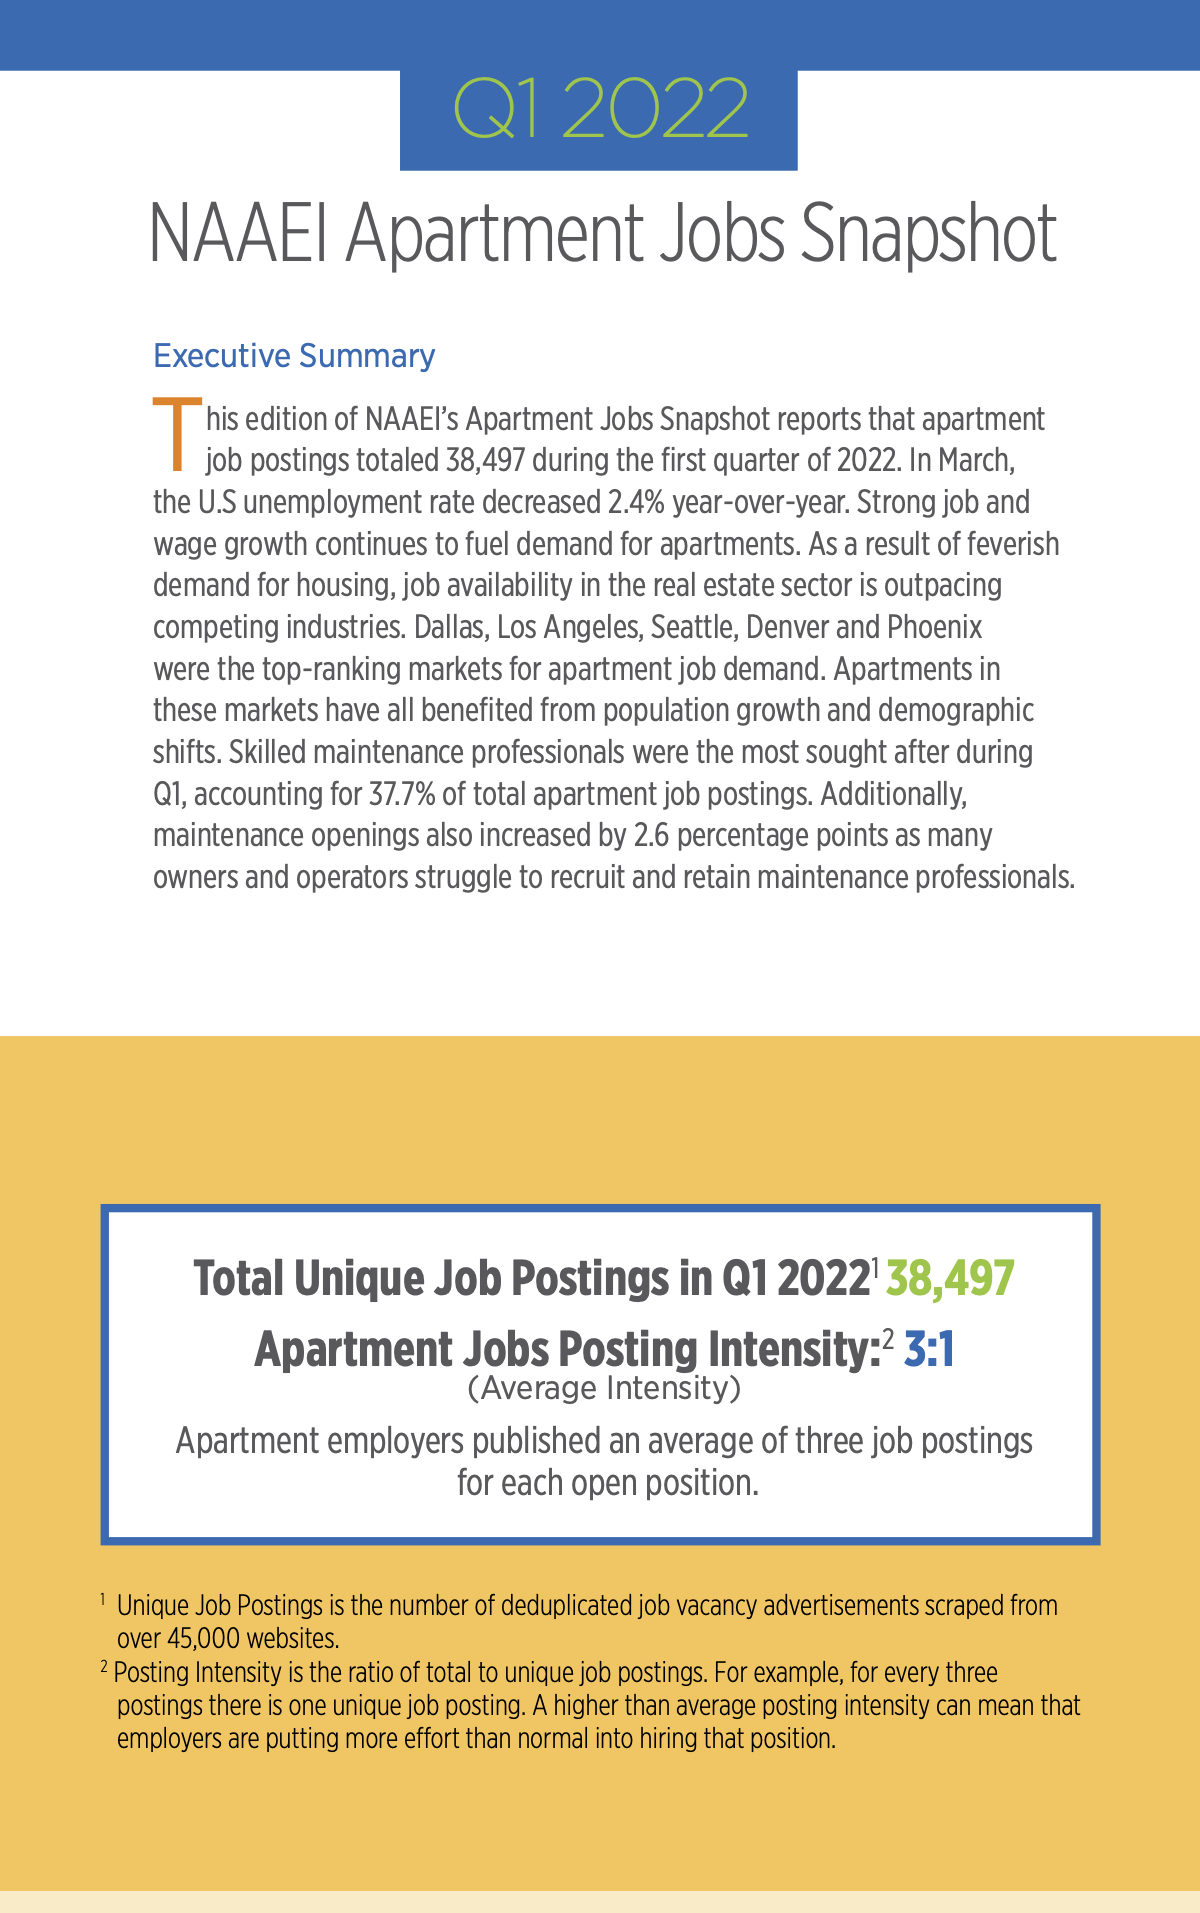 apartment jobs snapshot q1 2022